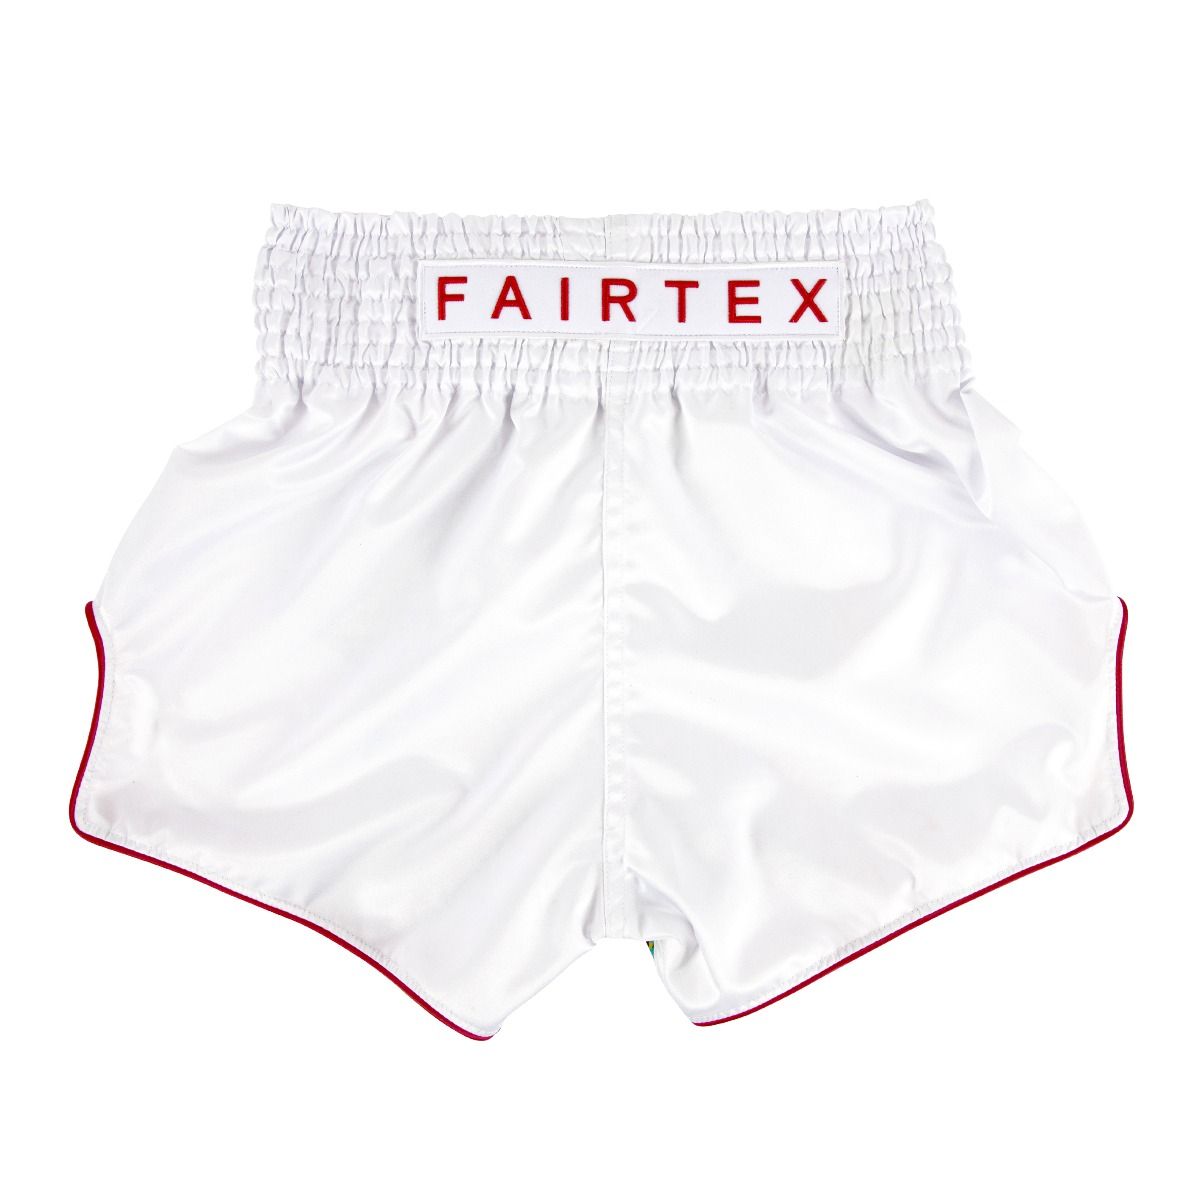 FAIRTEX Slim Cut Muaythai Shorts BS1908